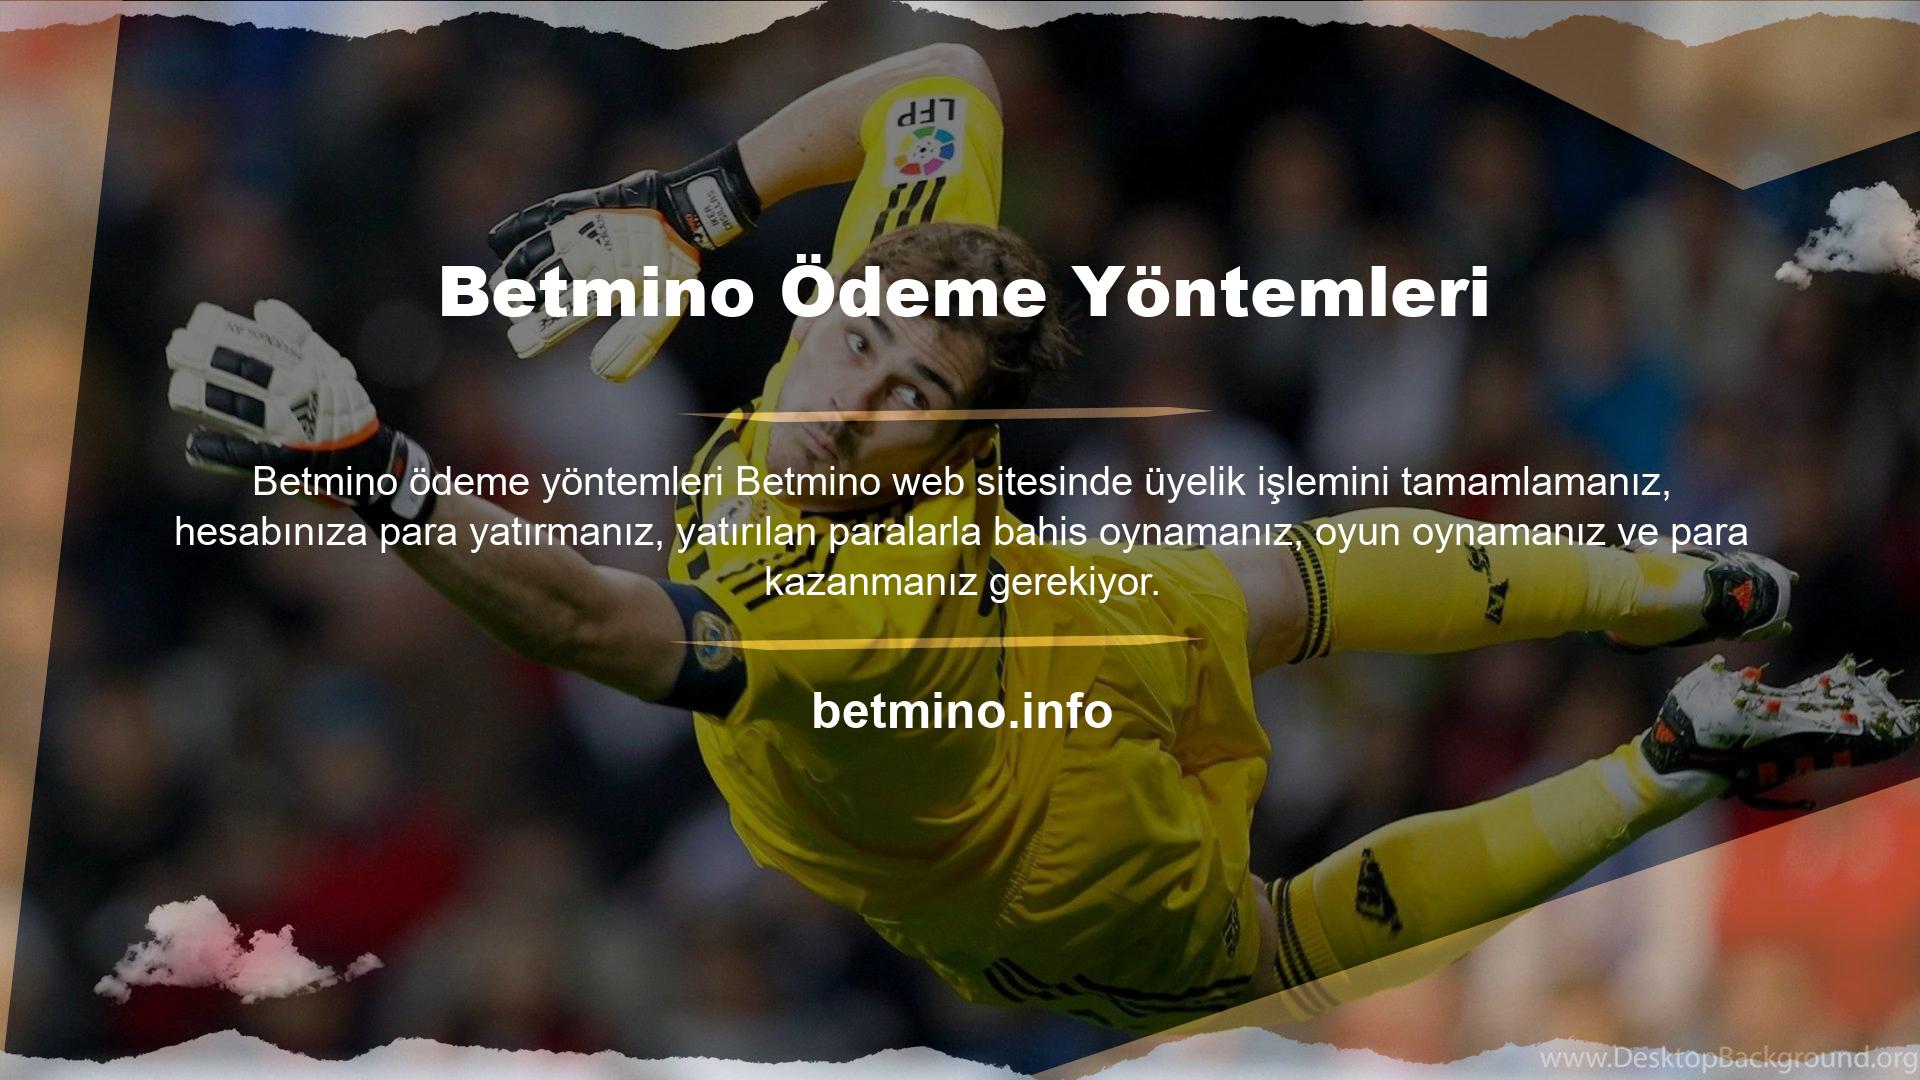 Site tarafından kurulan Betmino ödeme teknolojisini kullanarak hesabınızı adınıza para çekmek için yönlendirmelisiniz